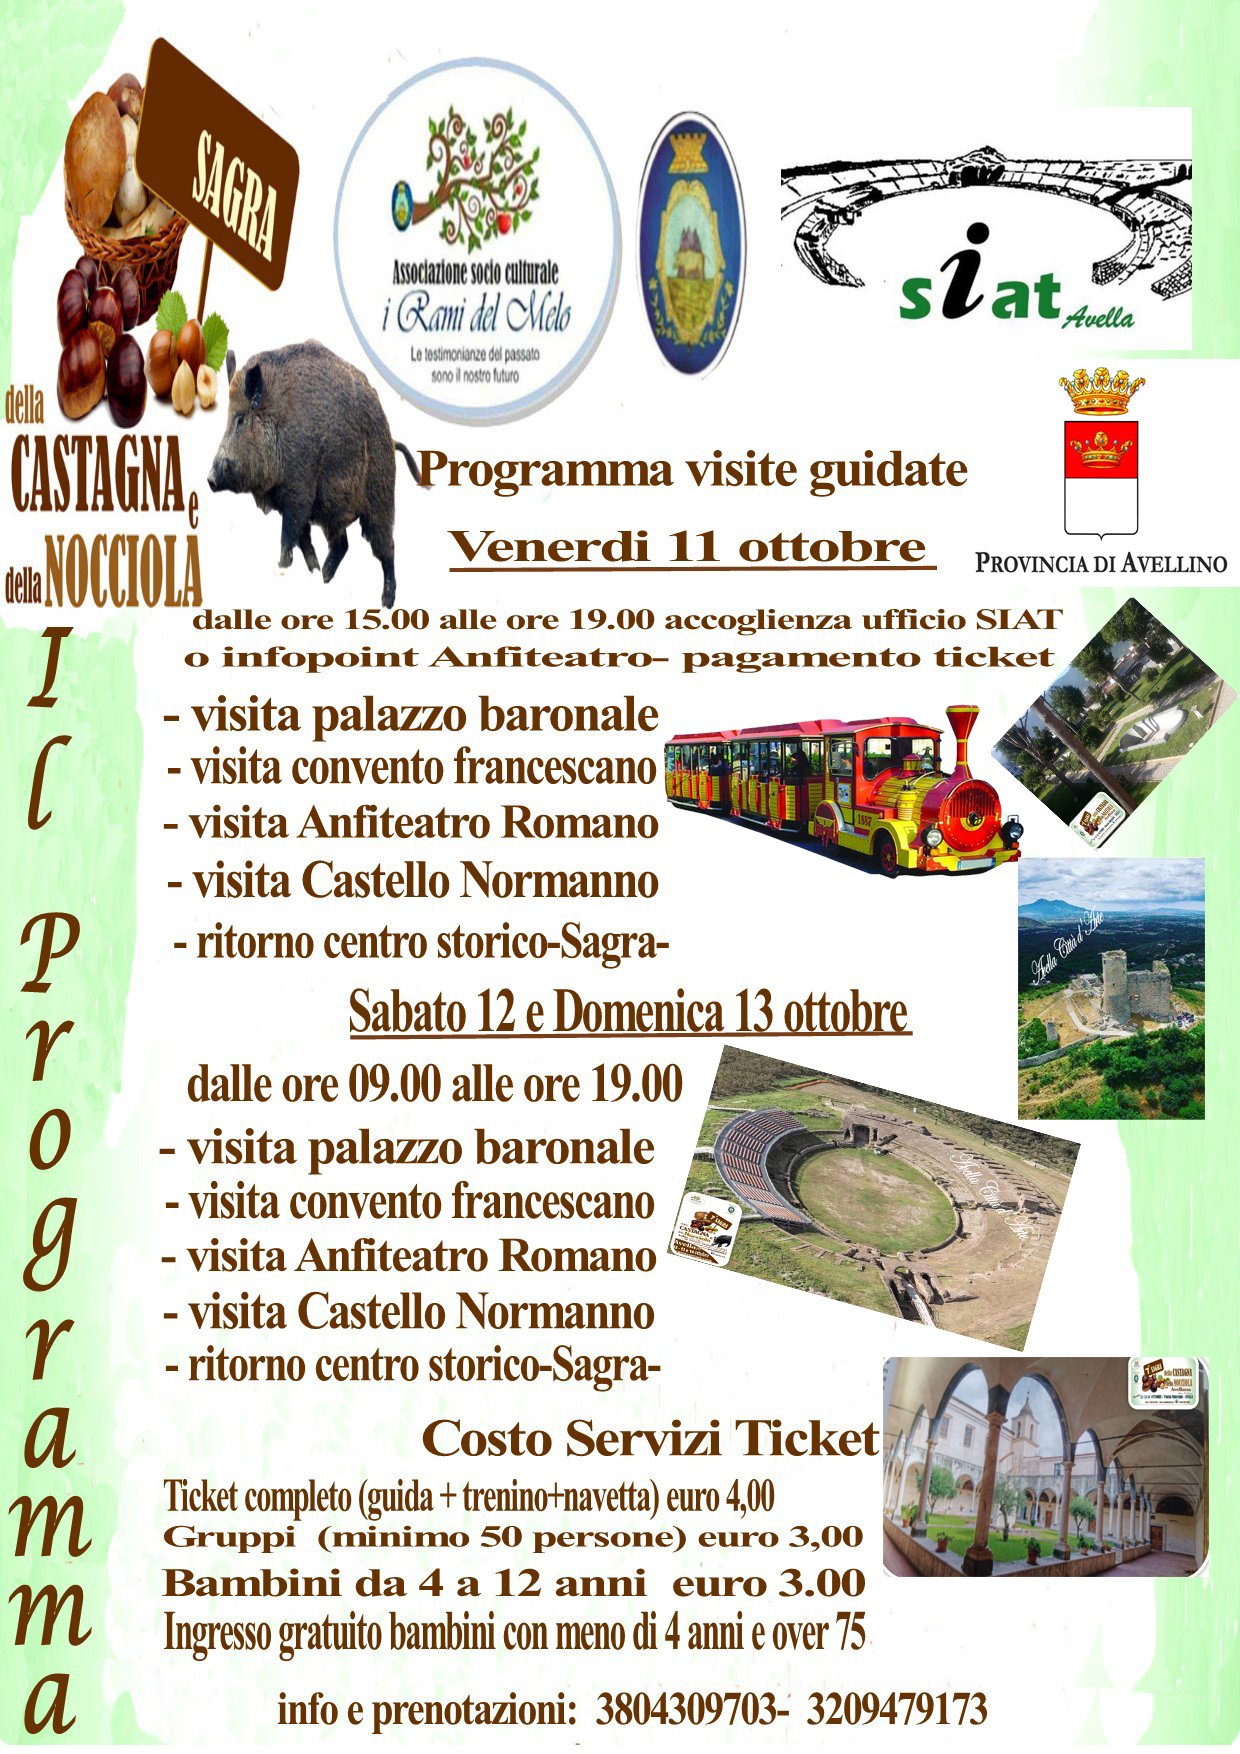 Programma Sagra Castagna e Nocciola Avella 2019